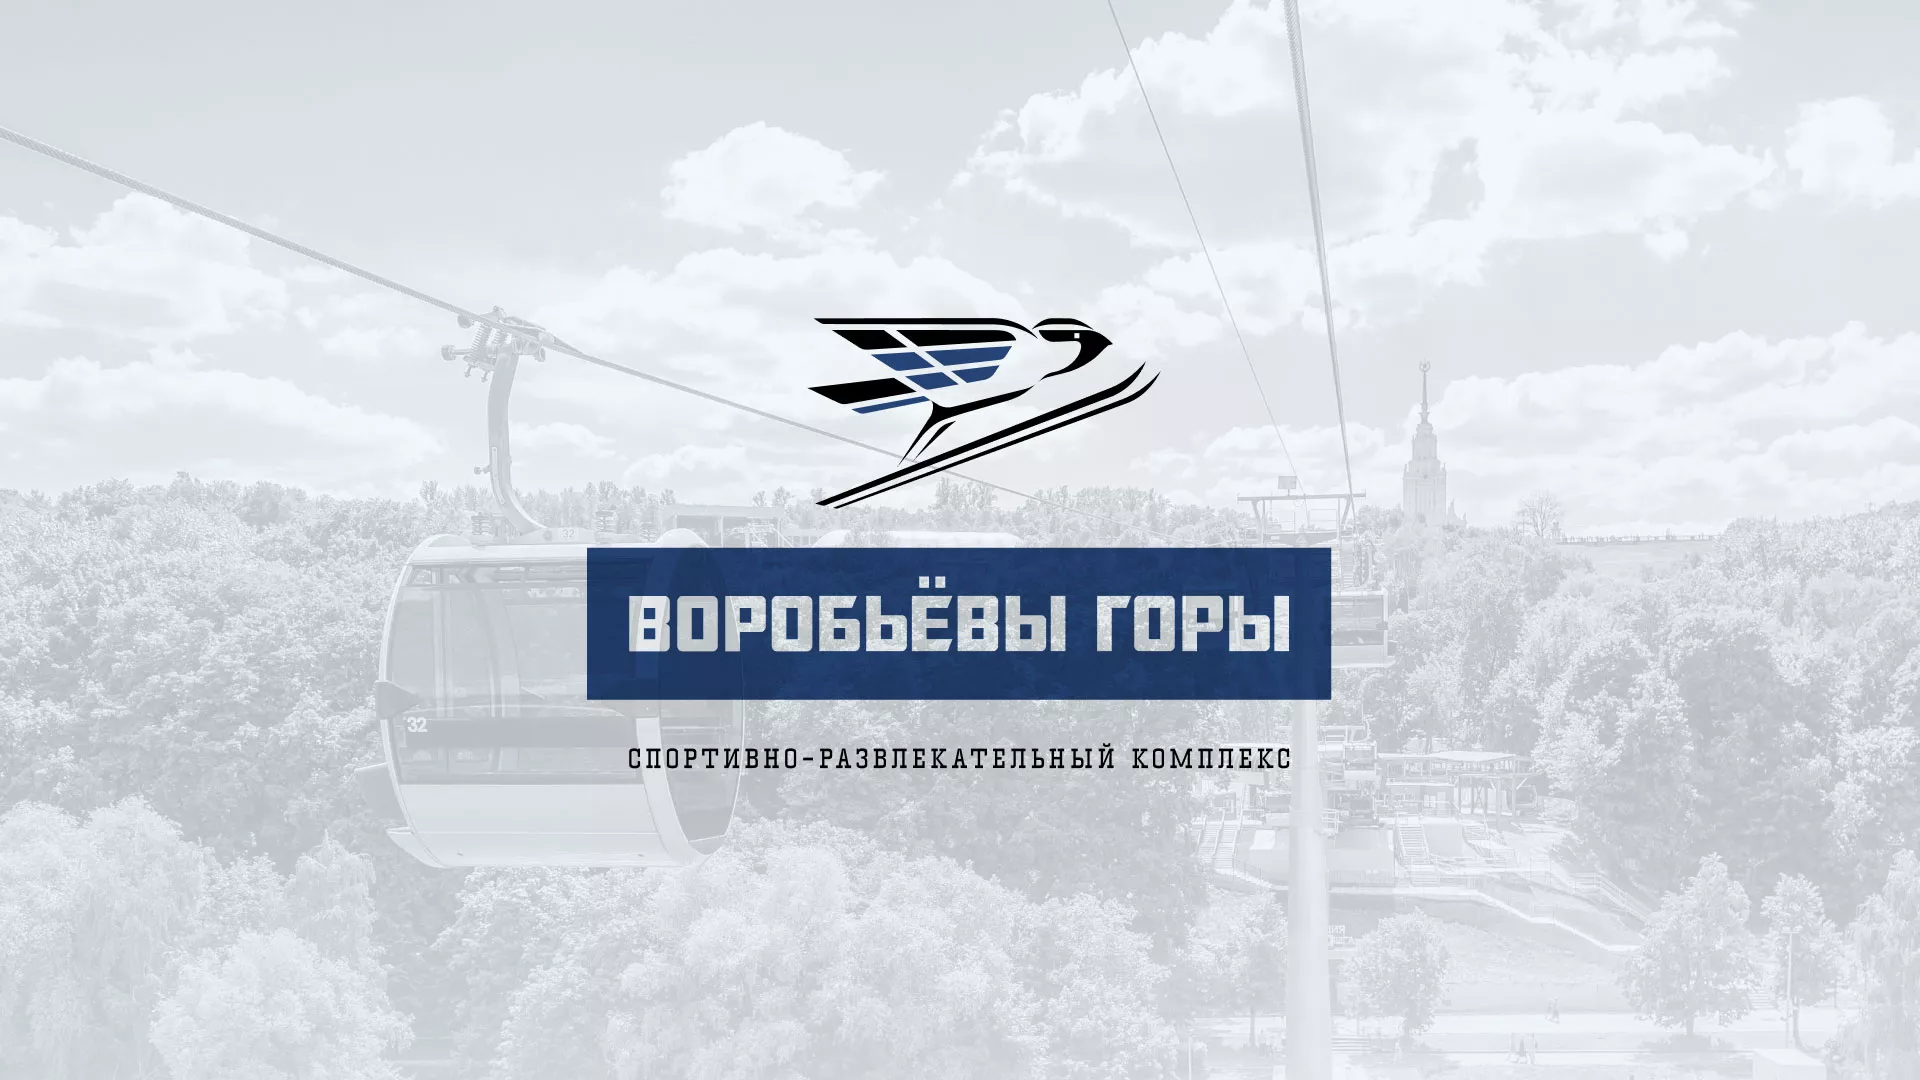 Разработка сайта в Павлово для спортивно-развлекательного комплекса «Воробьёвы горы»